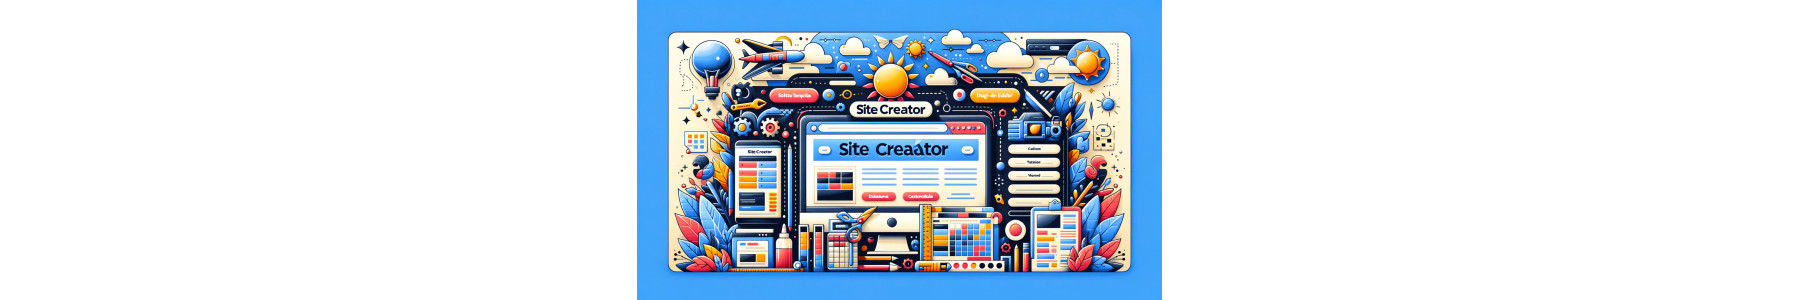 Crea Siti Web Facilmente con Site Creator | Webbin24.com